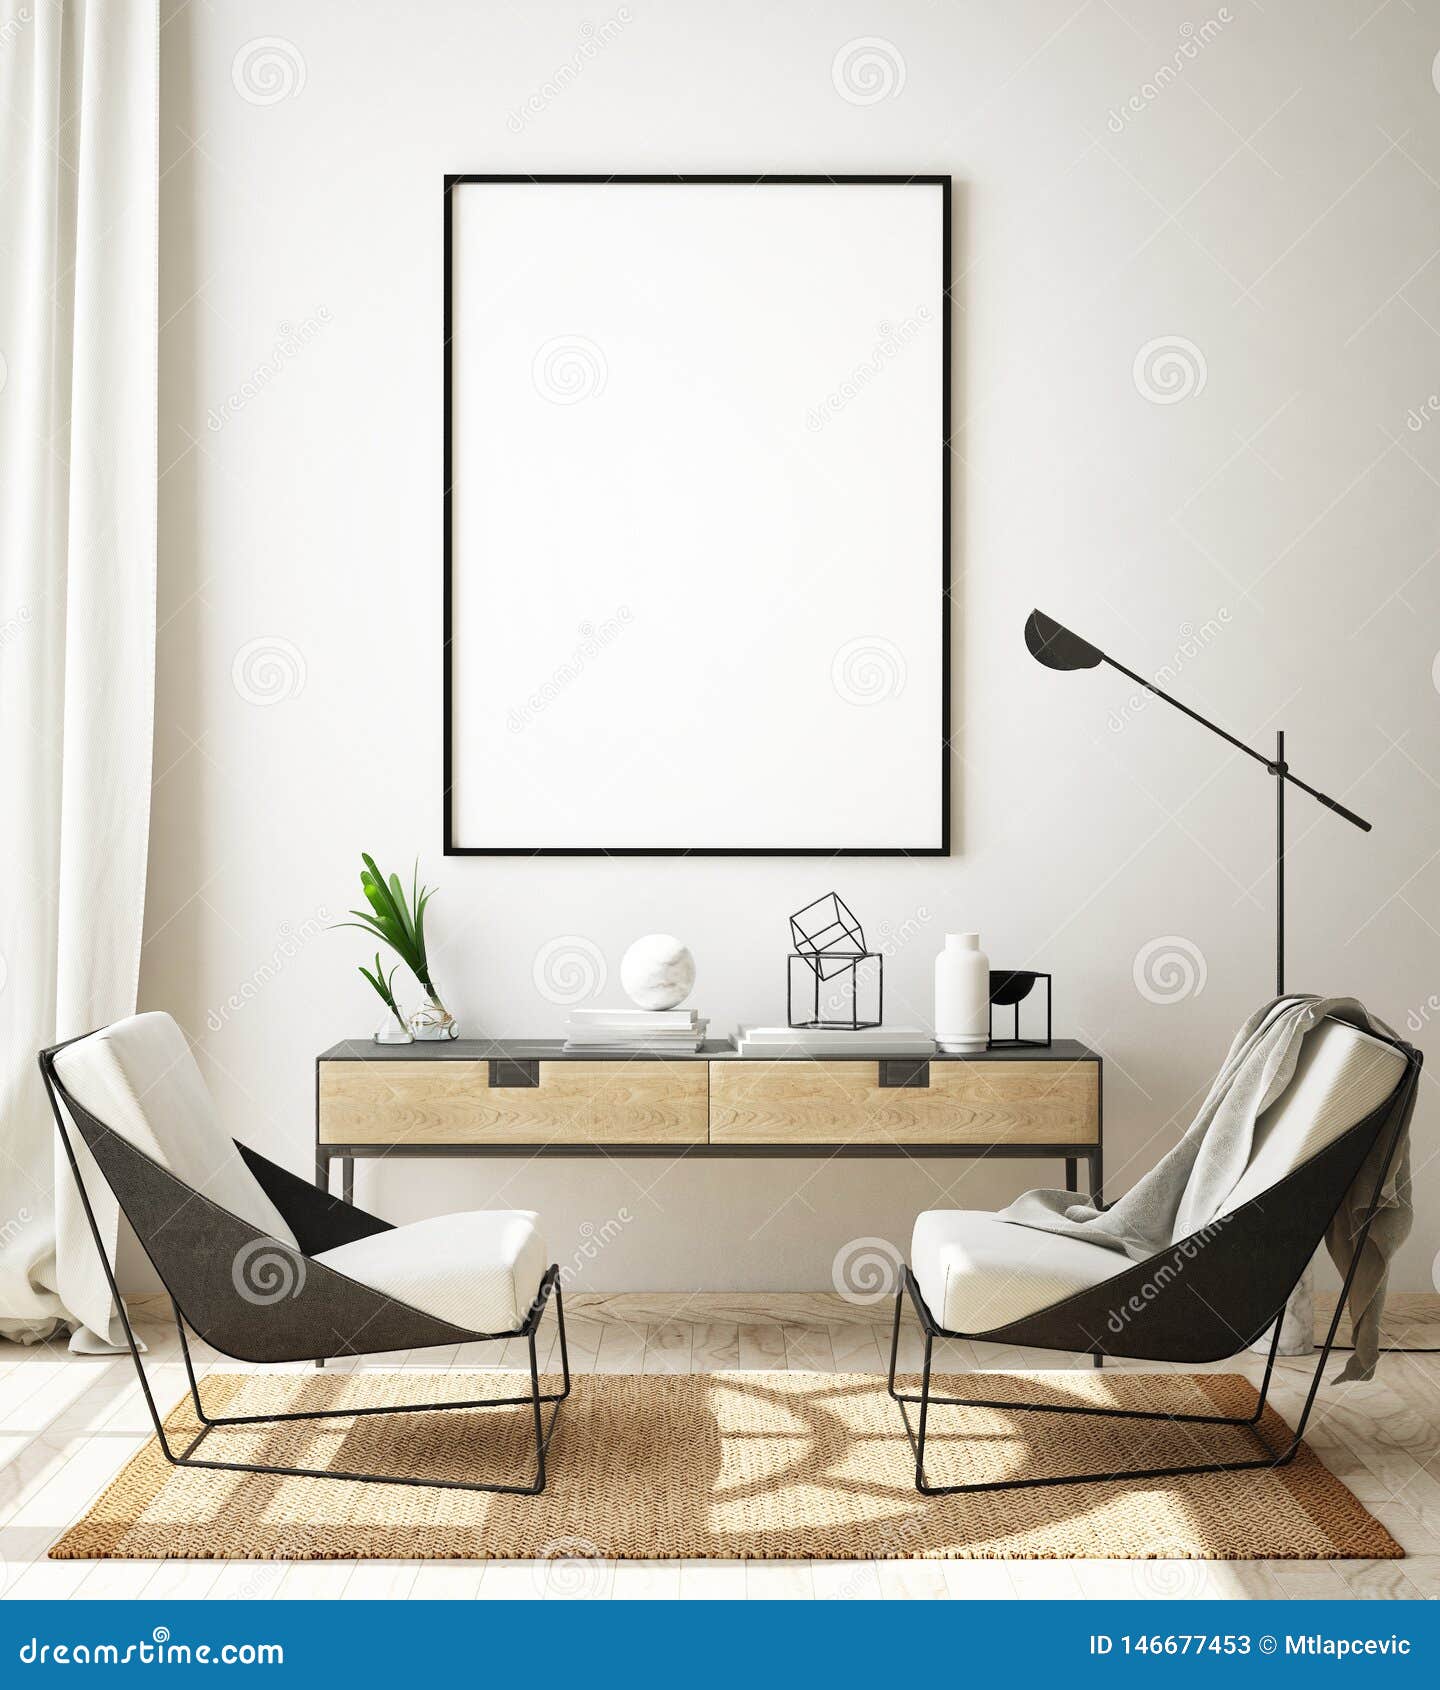 mock up poster frame in modern interior background, living room, scandinavian style, 3d render, 3d 